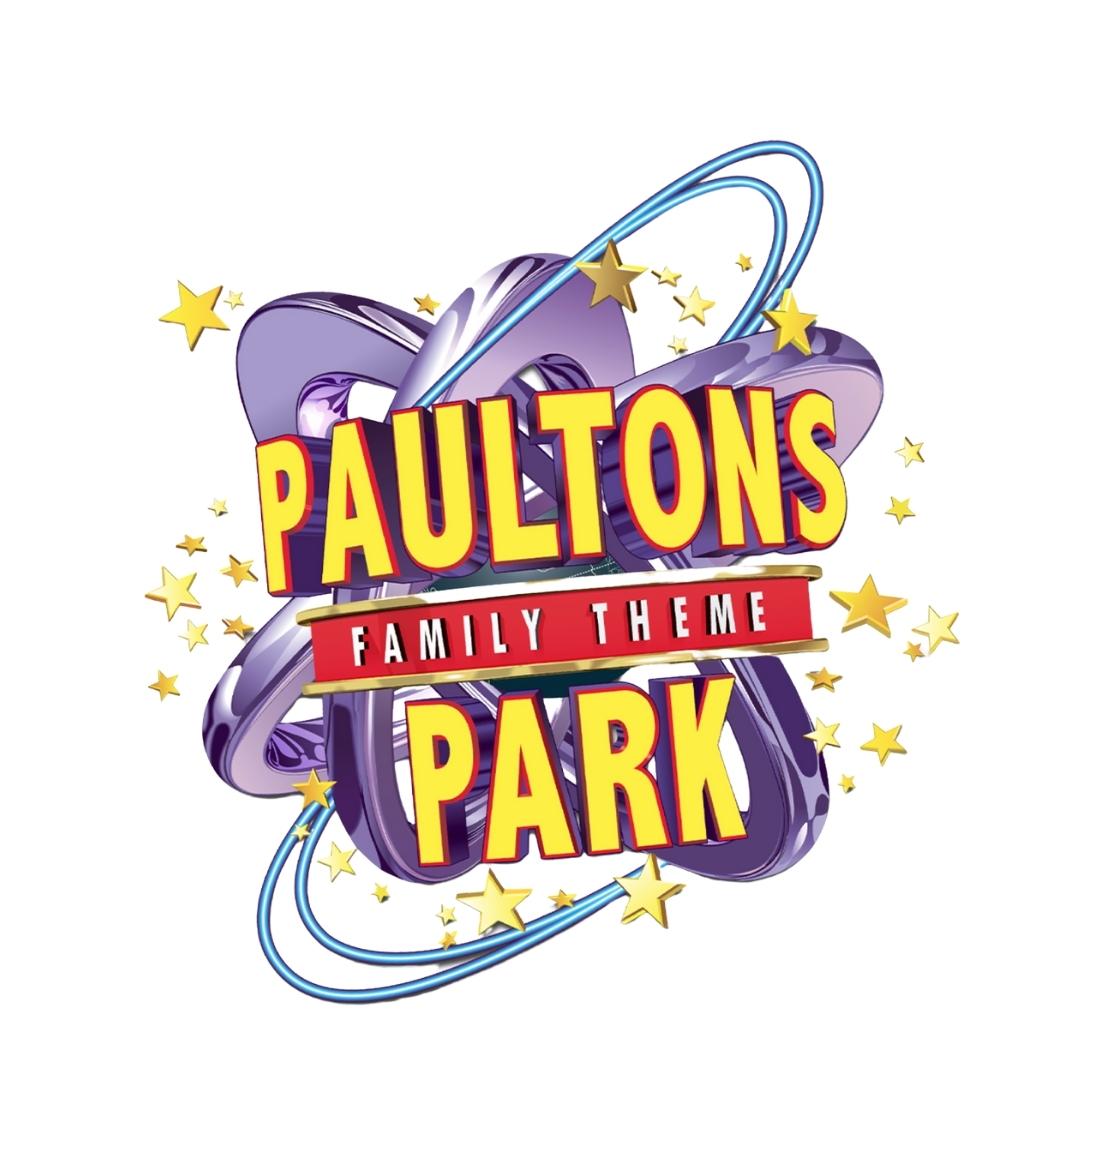 Paulton’s Park